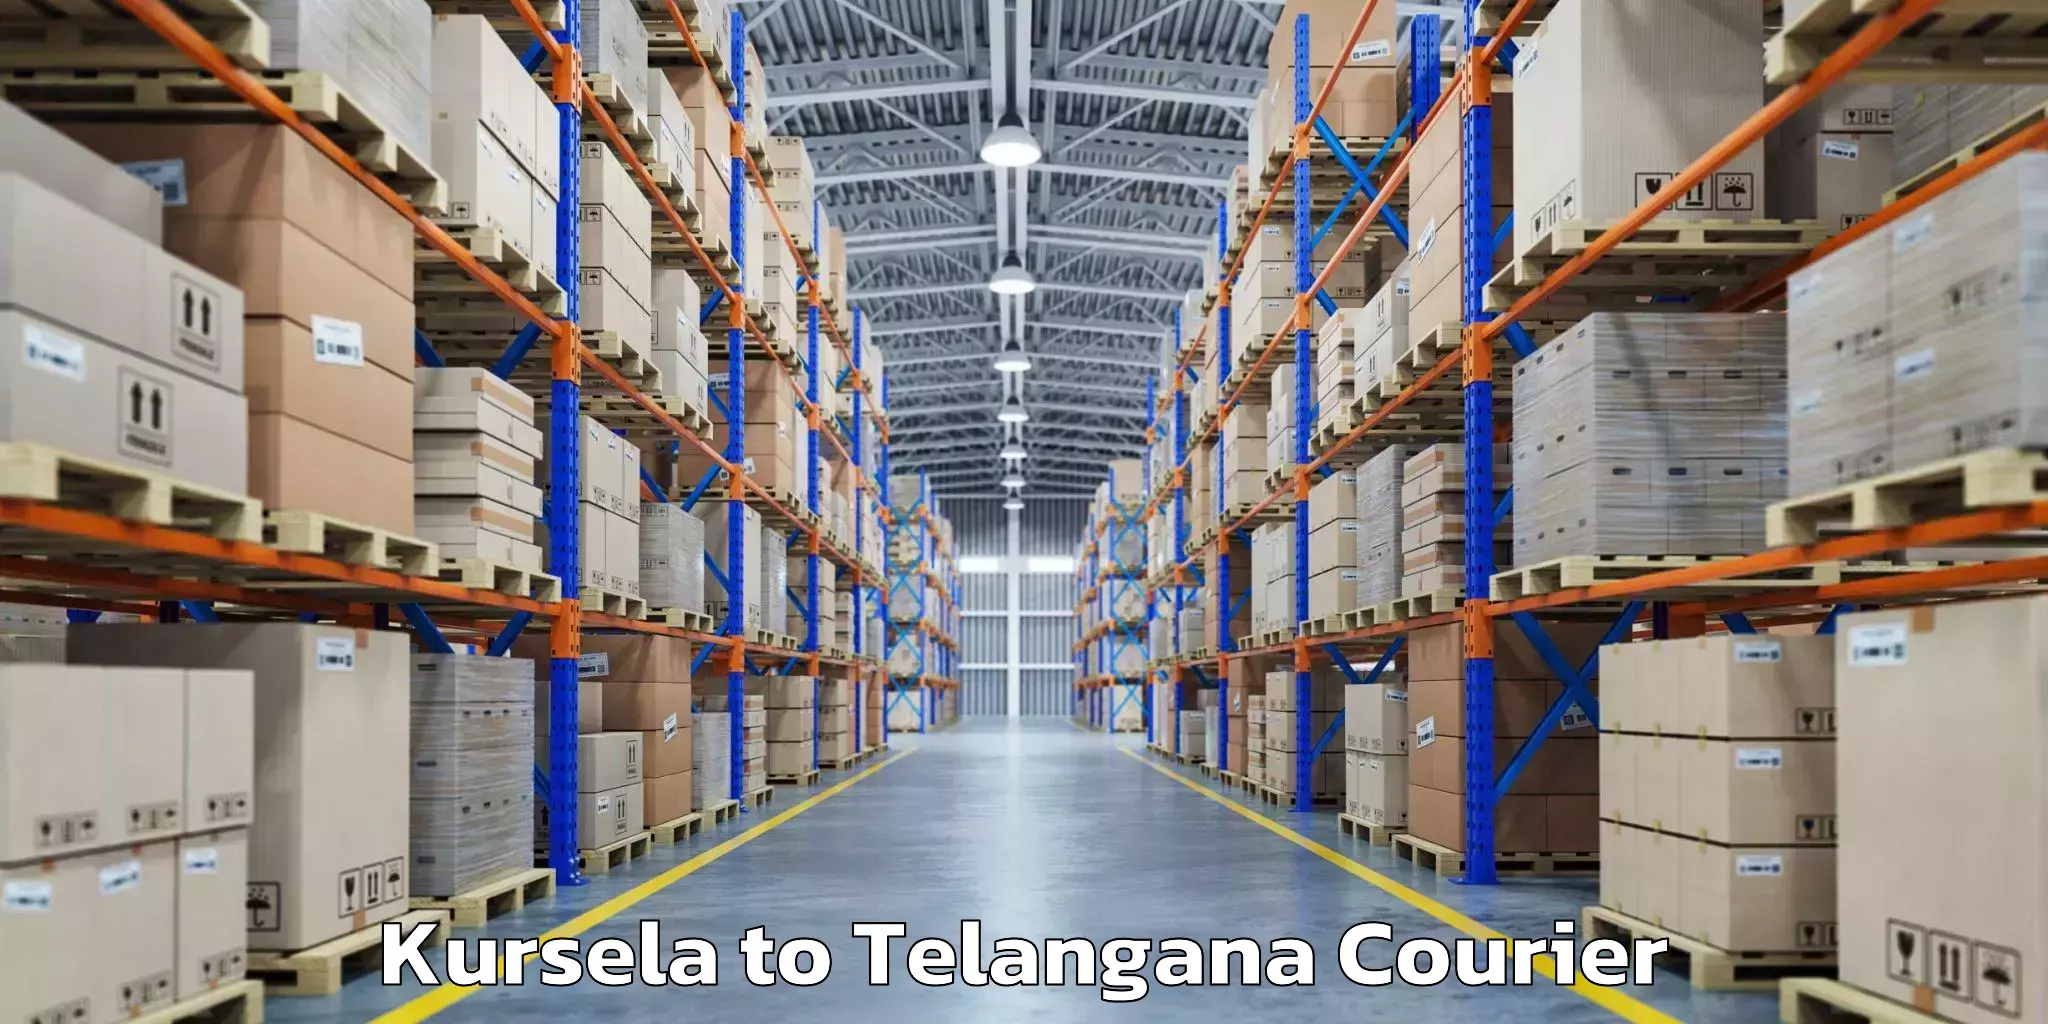 Baggage transport updates in Kursela to Telangana